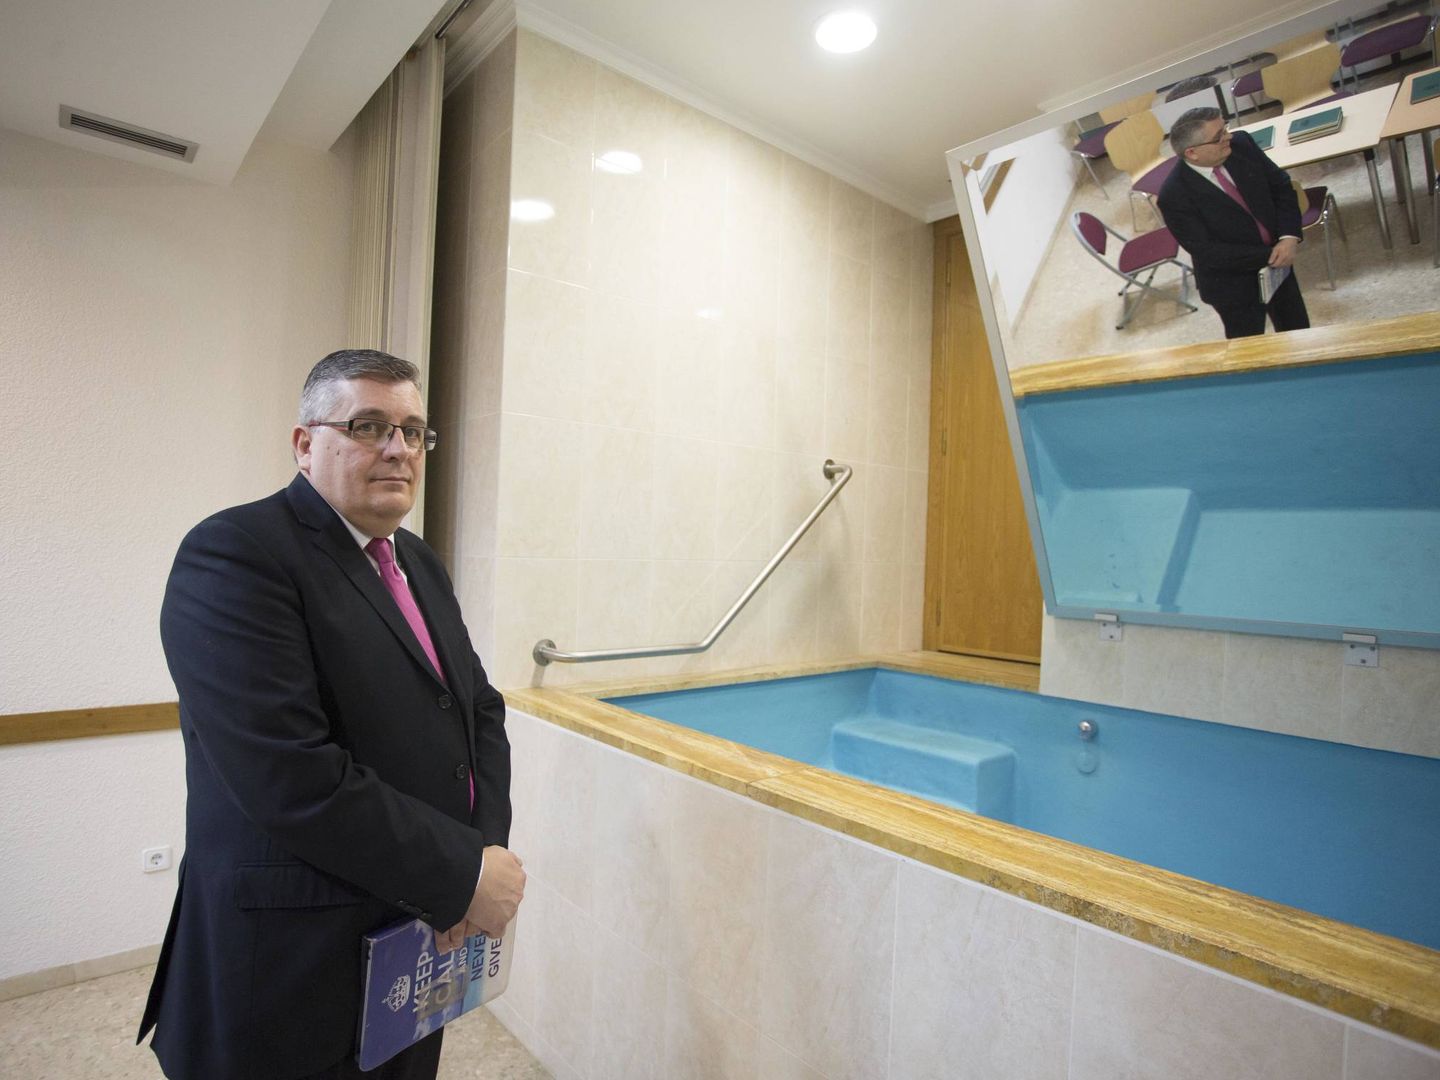 Vilar en la pila bautismal que hay en la iglesia. Los mormones se bautizan por inmersión. (Marga Ferrer)